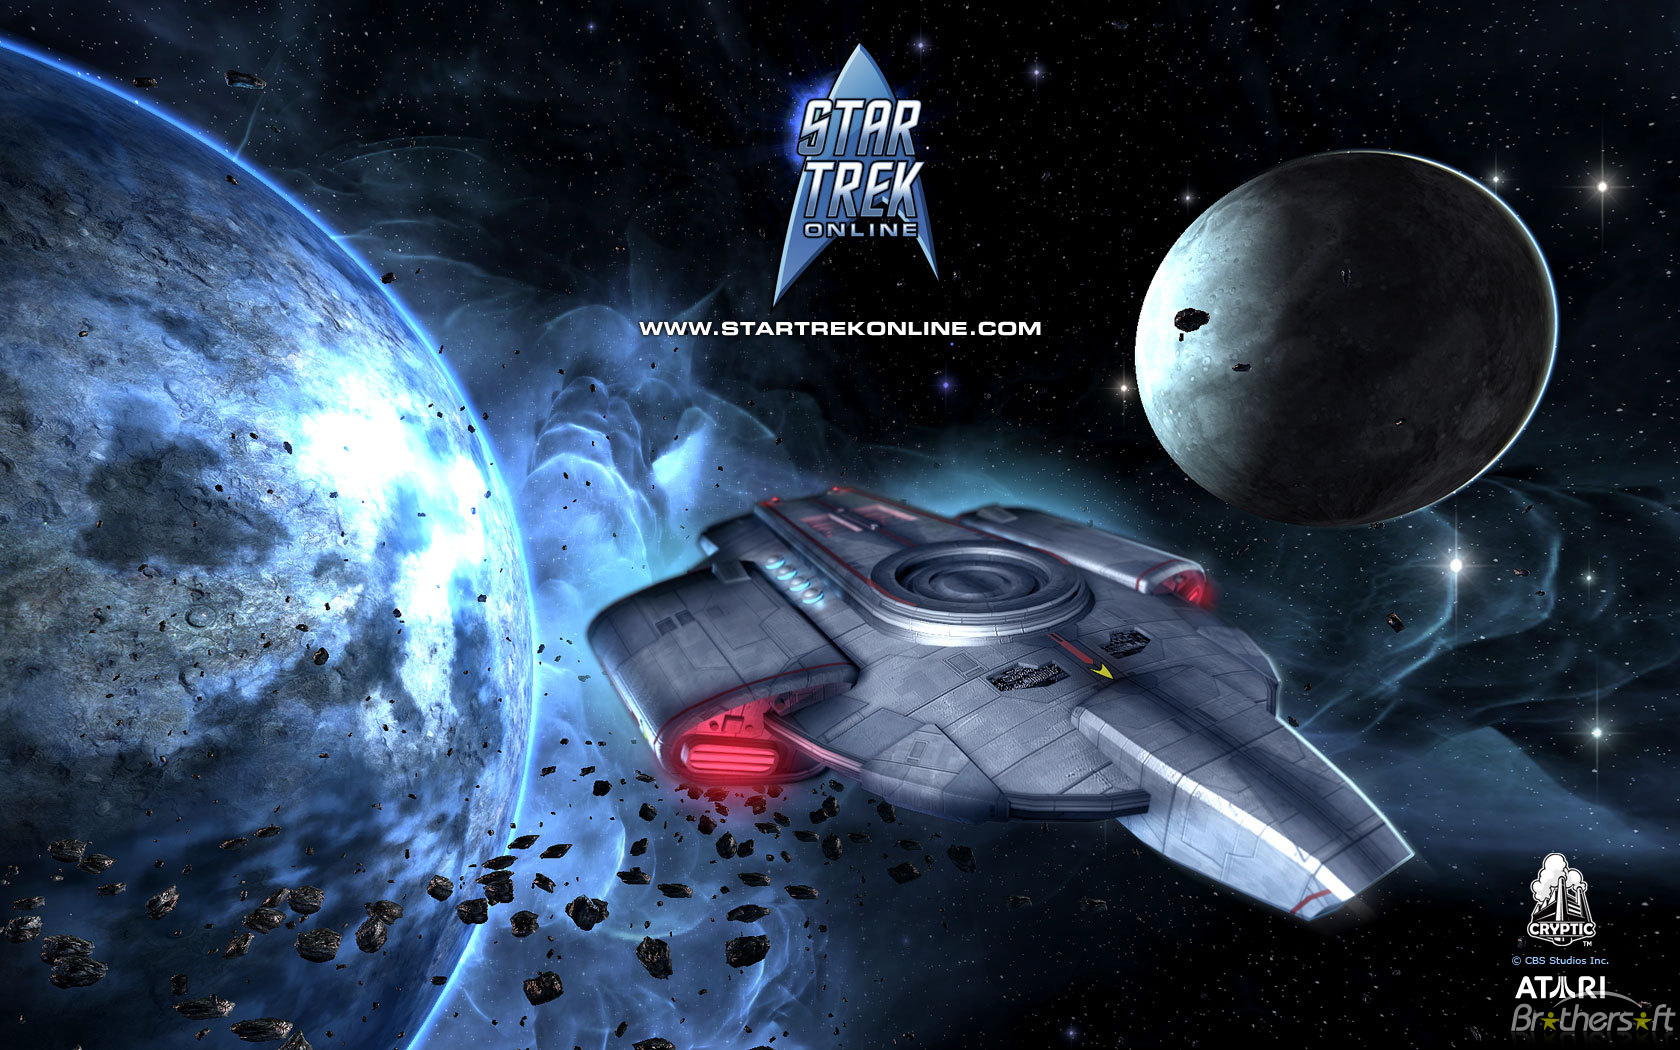 Star Trek Online Wallpaper Pack For